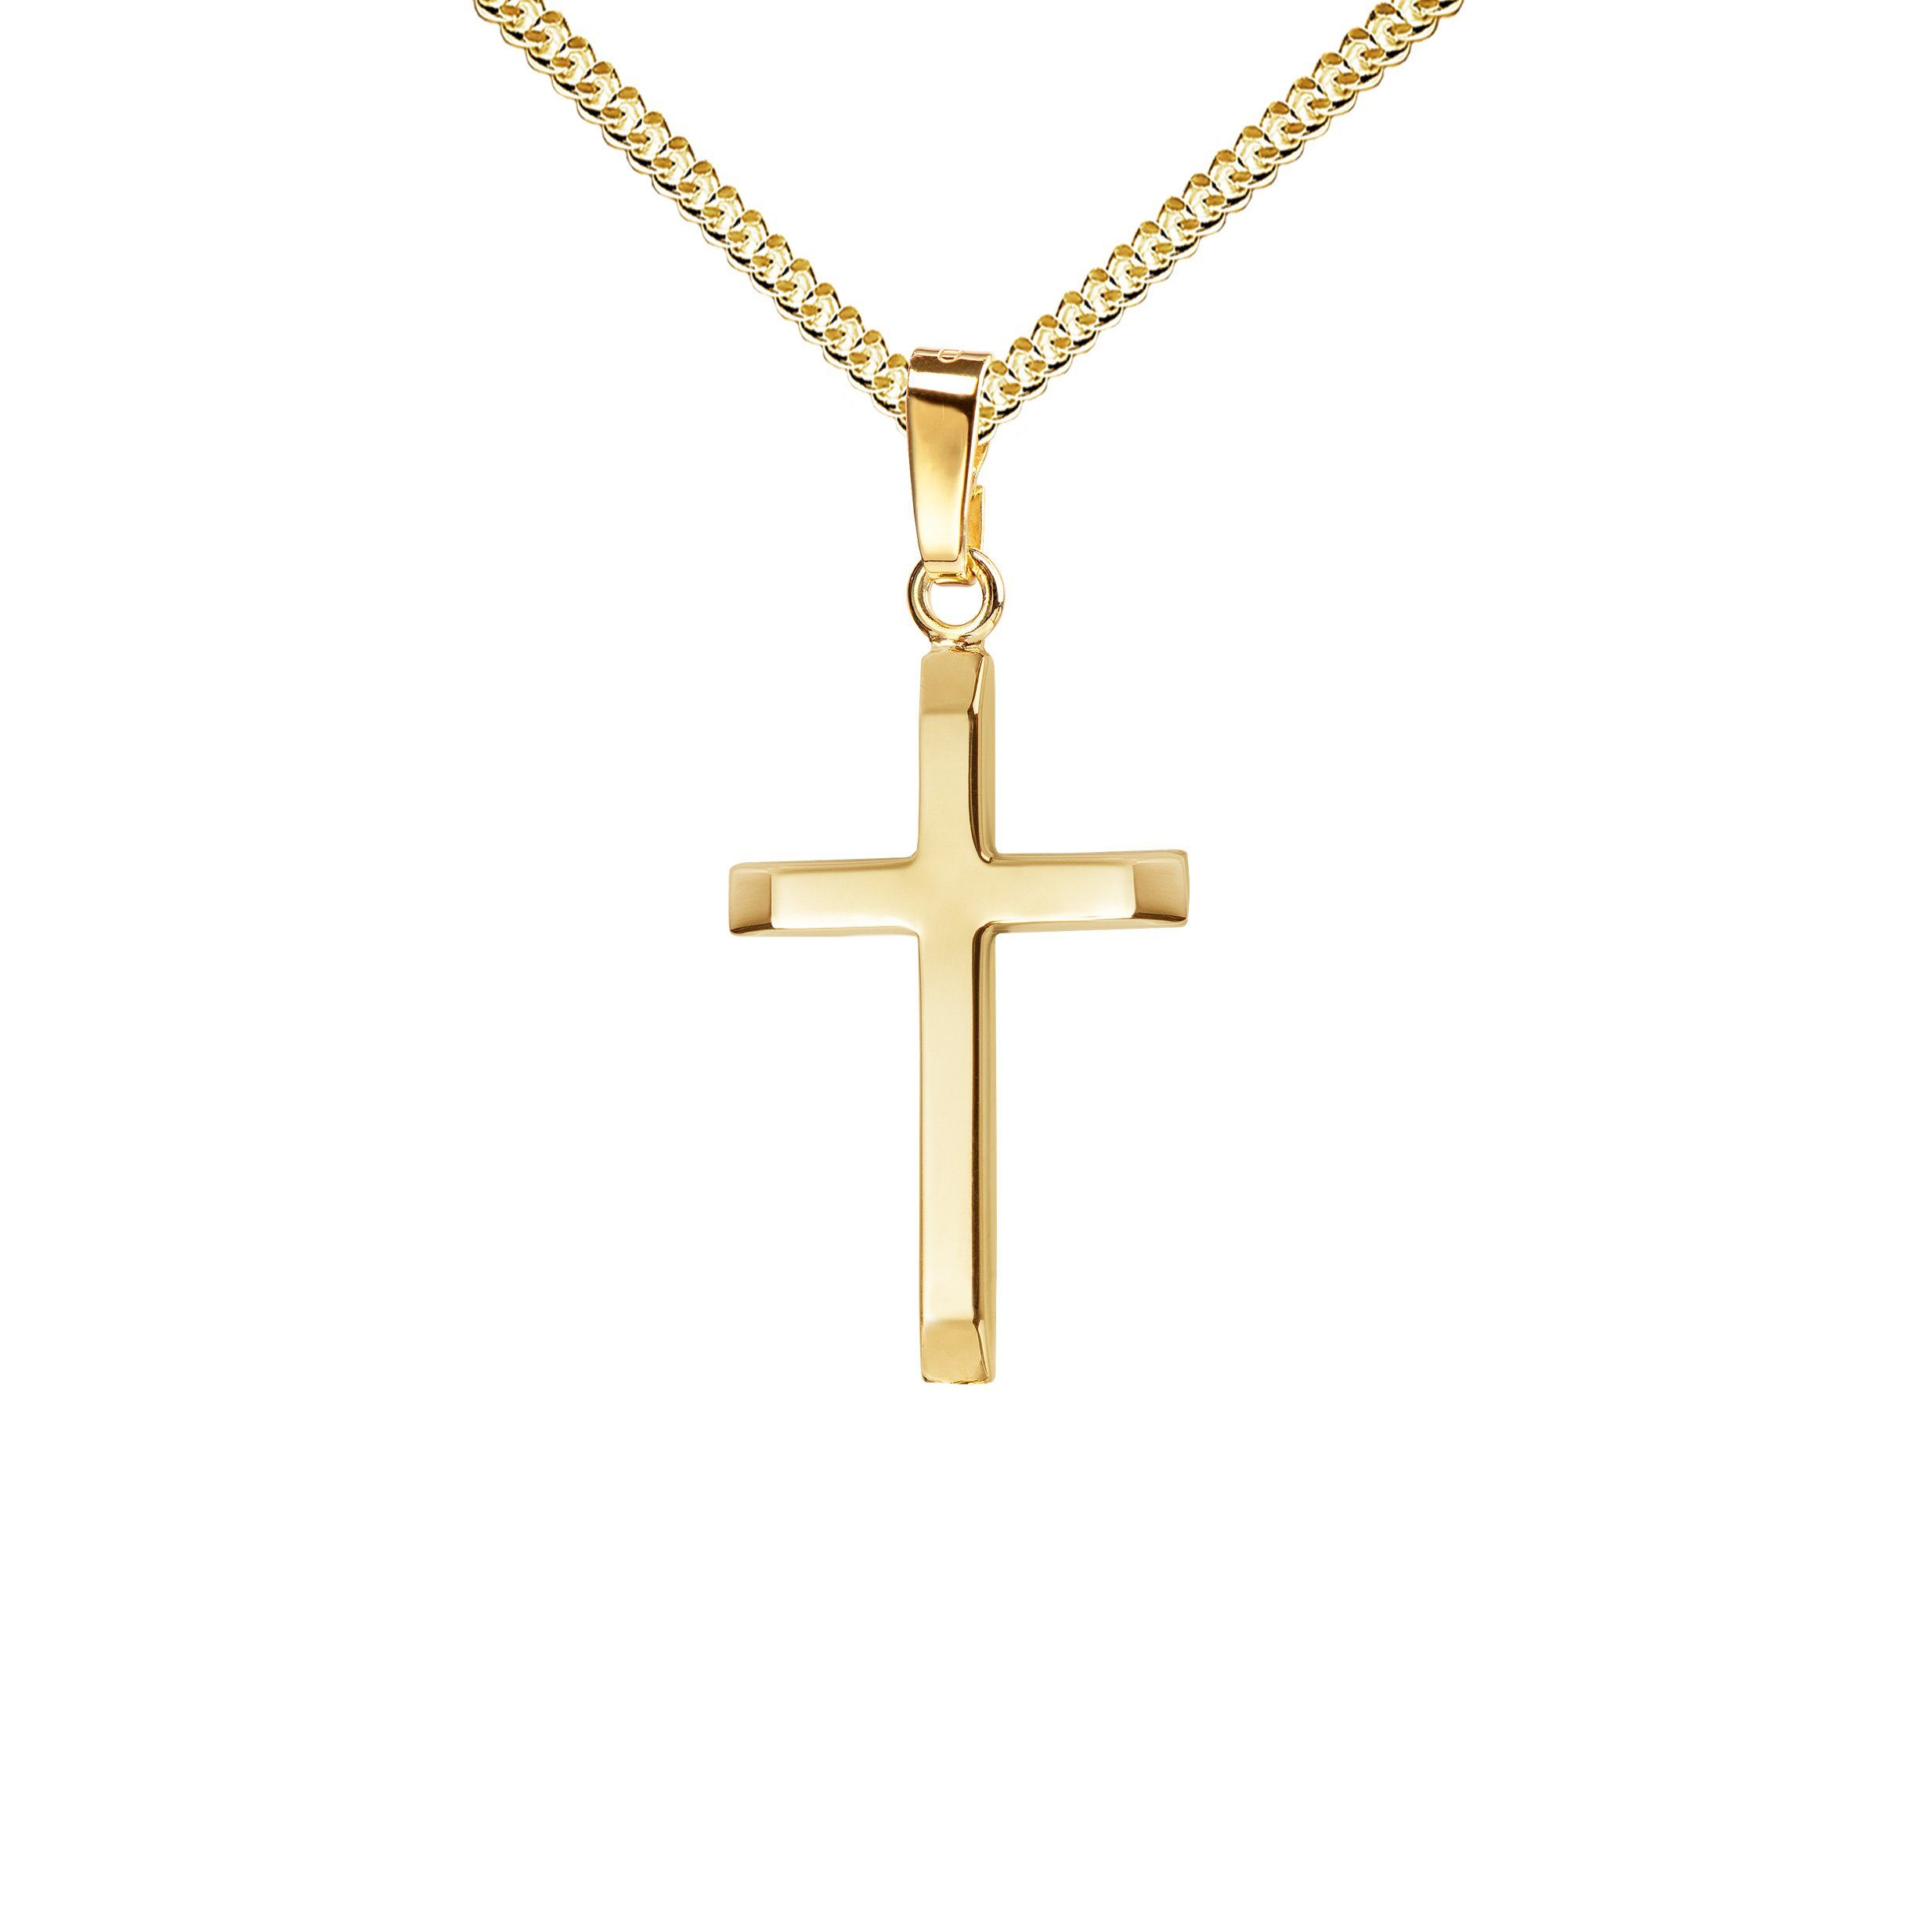 JEVELION Kreuzkette Kreuz Anhänger 750 Gold - Made in Germany (Goldkreuz, für Damen und Herren), Mit Kette vergoldet- Länge wählbar 36 - 70 cm.